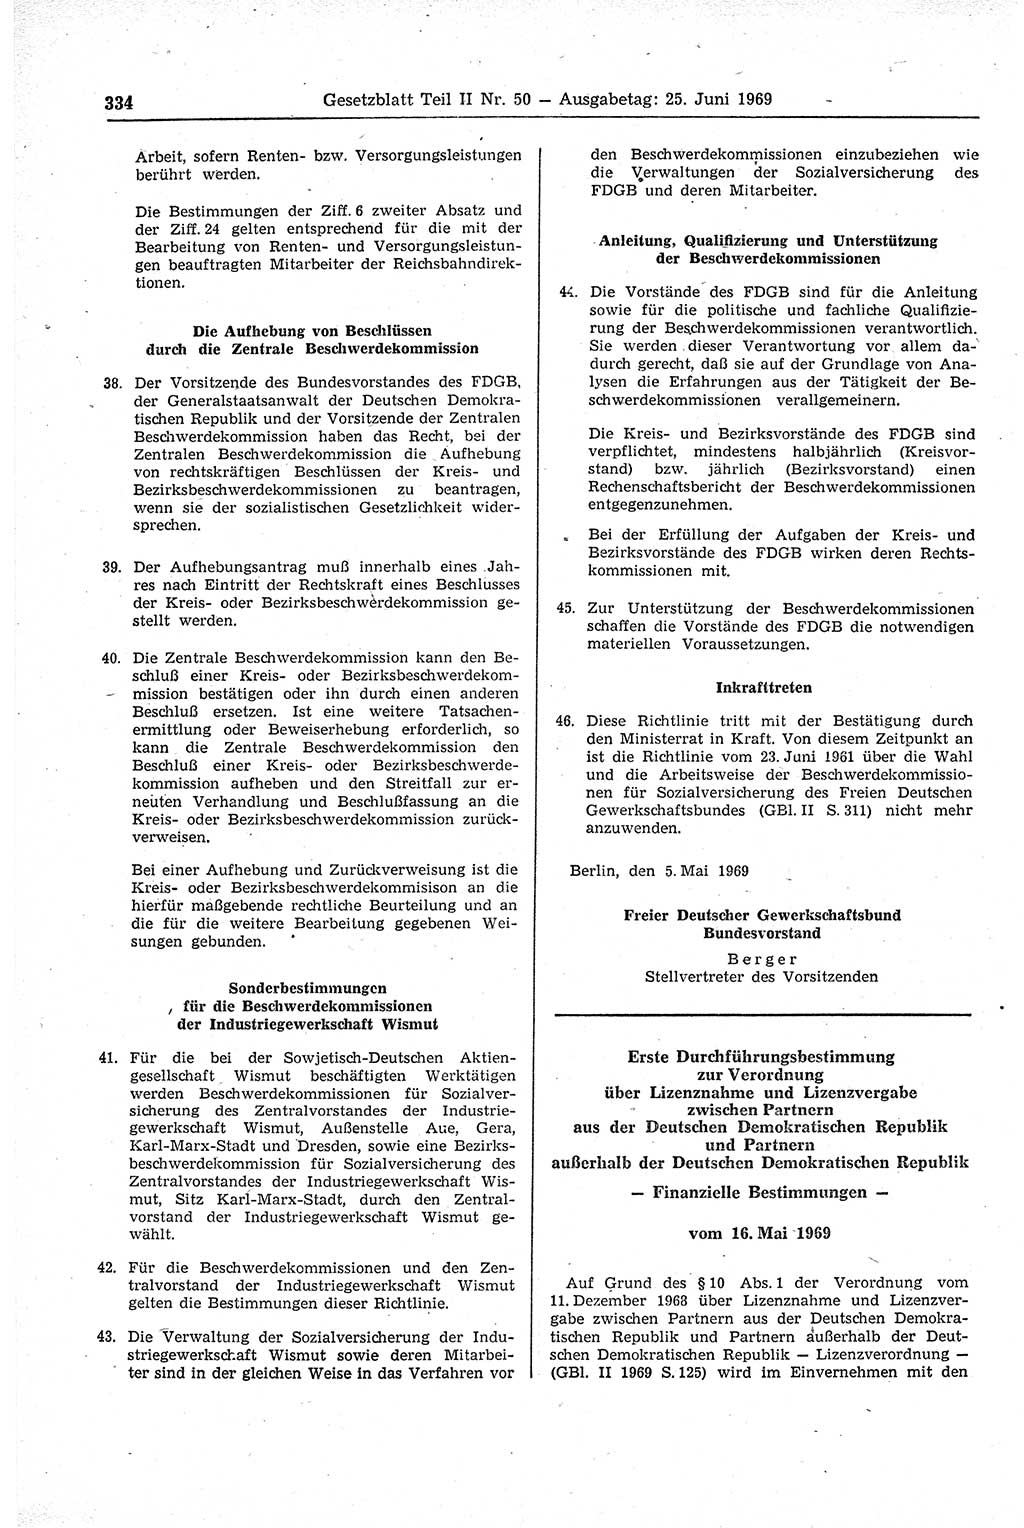 Gesetzblatt (GBl.) der Deutschen Demokratischen Republik (DDR) Teil ⅠⅠ 1969, Seite 334 (GBl. DDR ⅠⅠ 1969, S. 334)